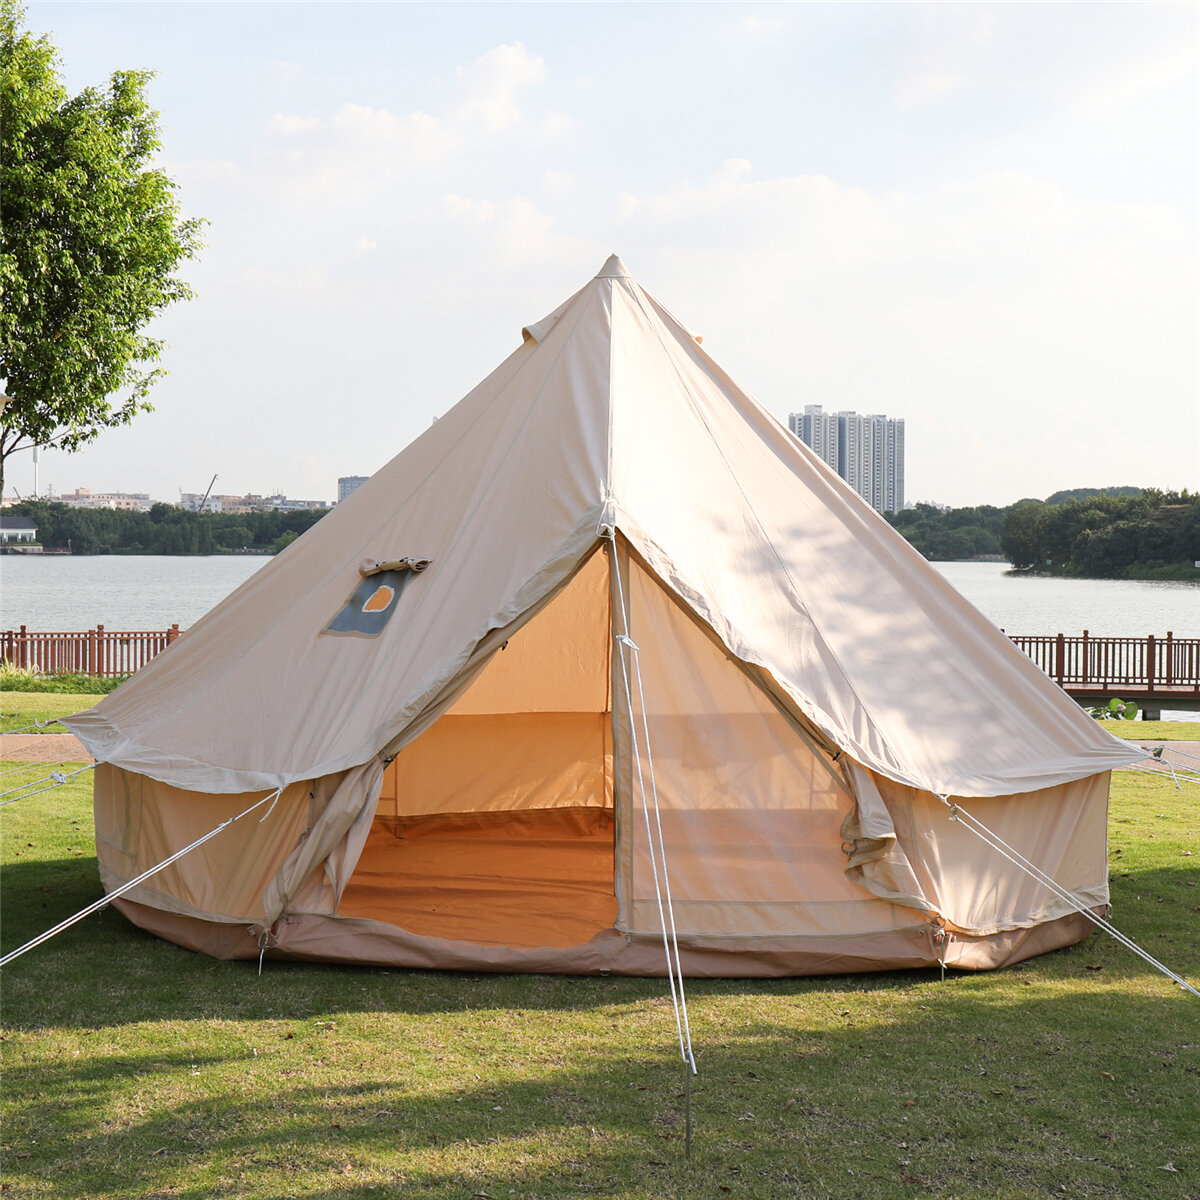 Tenda de lona de algodão em forma de pirâmide para camping ao ar livre, tenda impermeável para glamping de 4 estações, tamanho 3m 4m para tenda familiar.